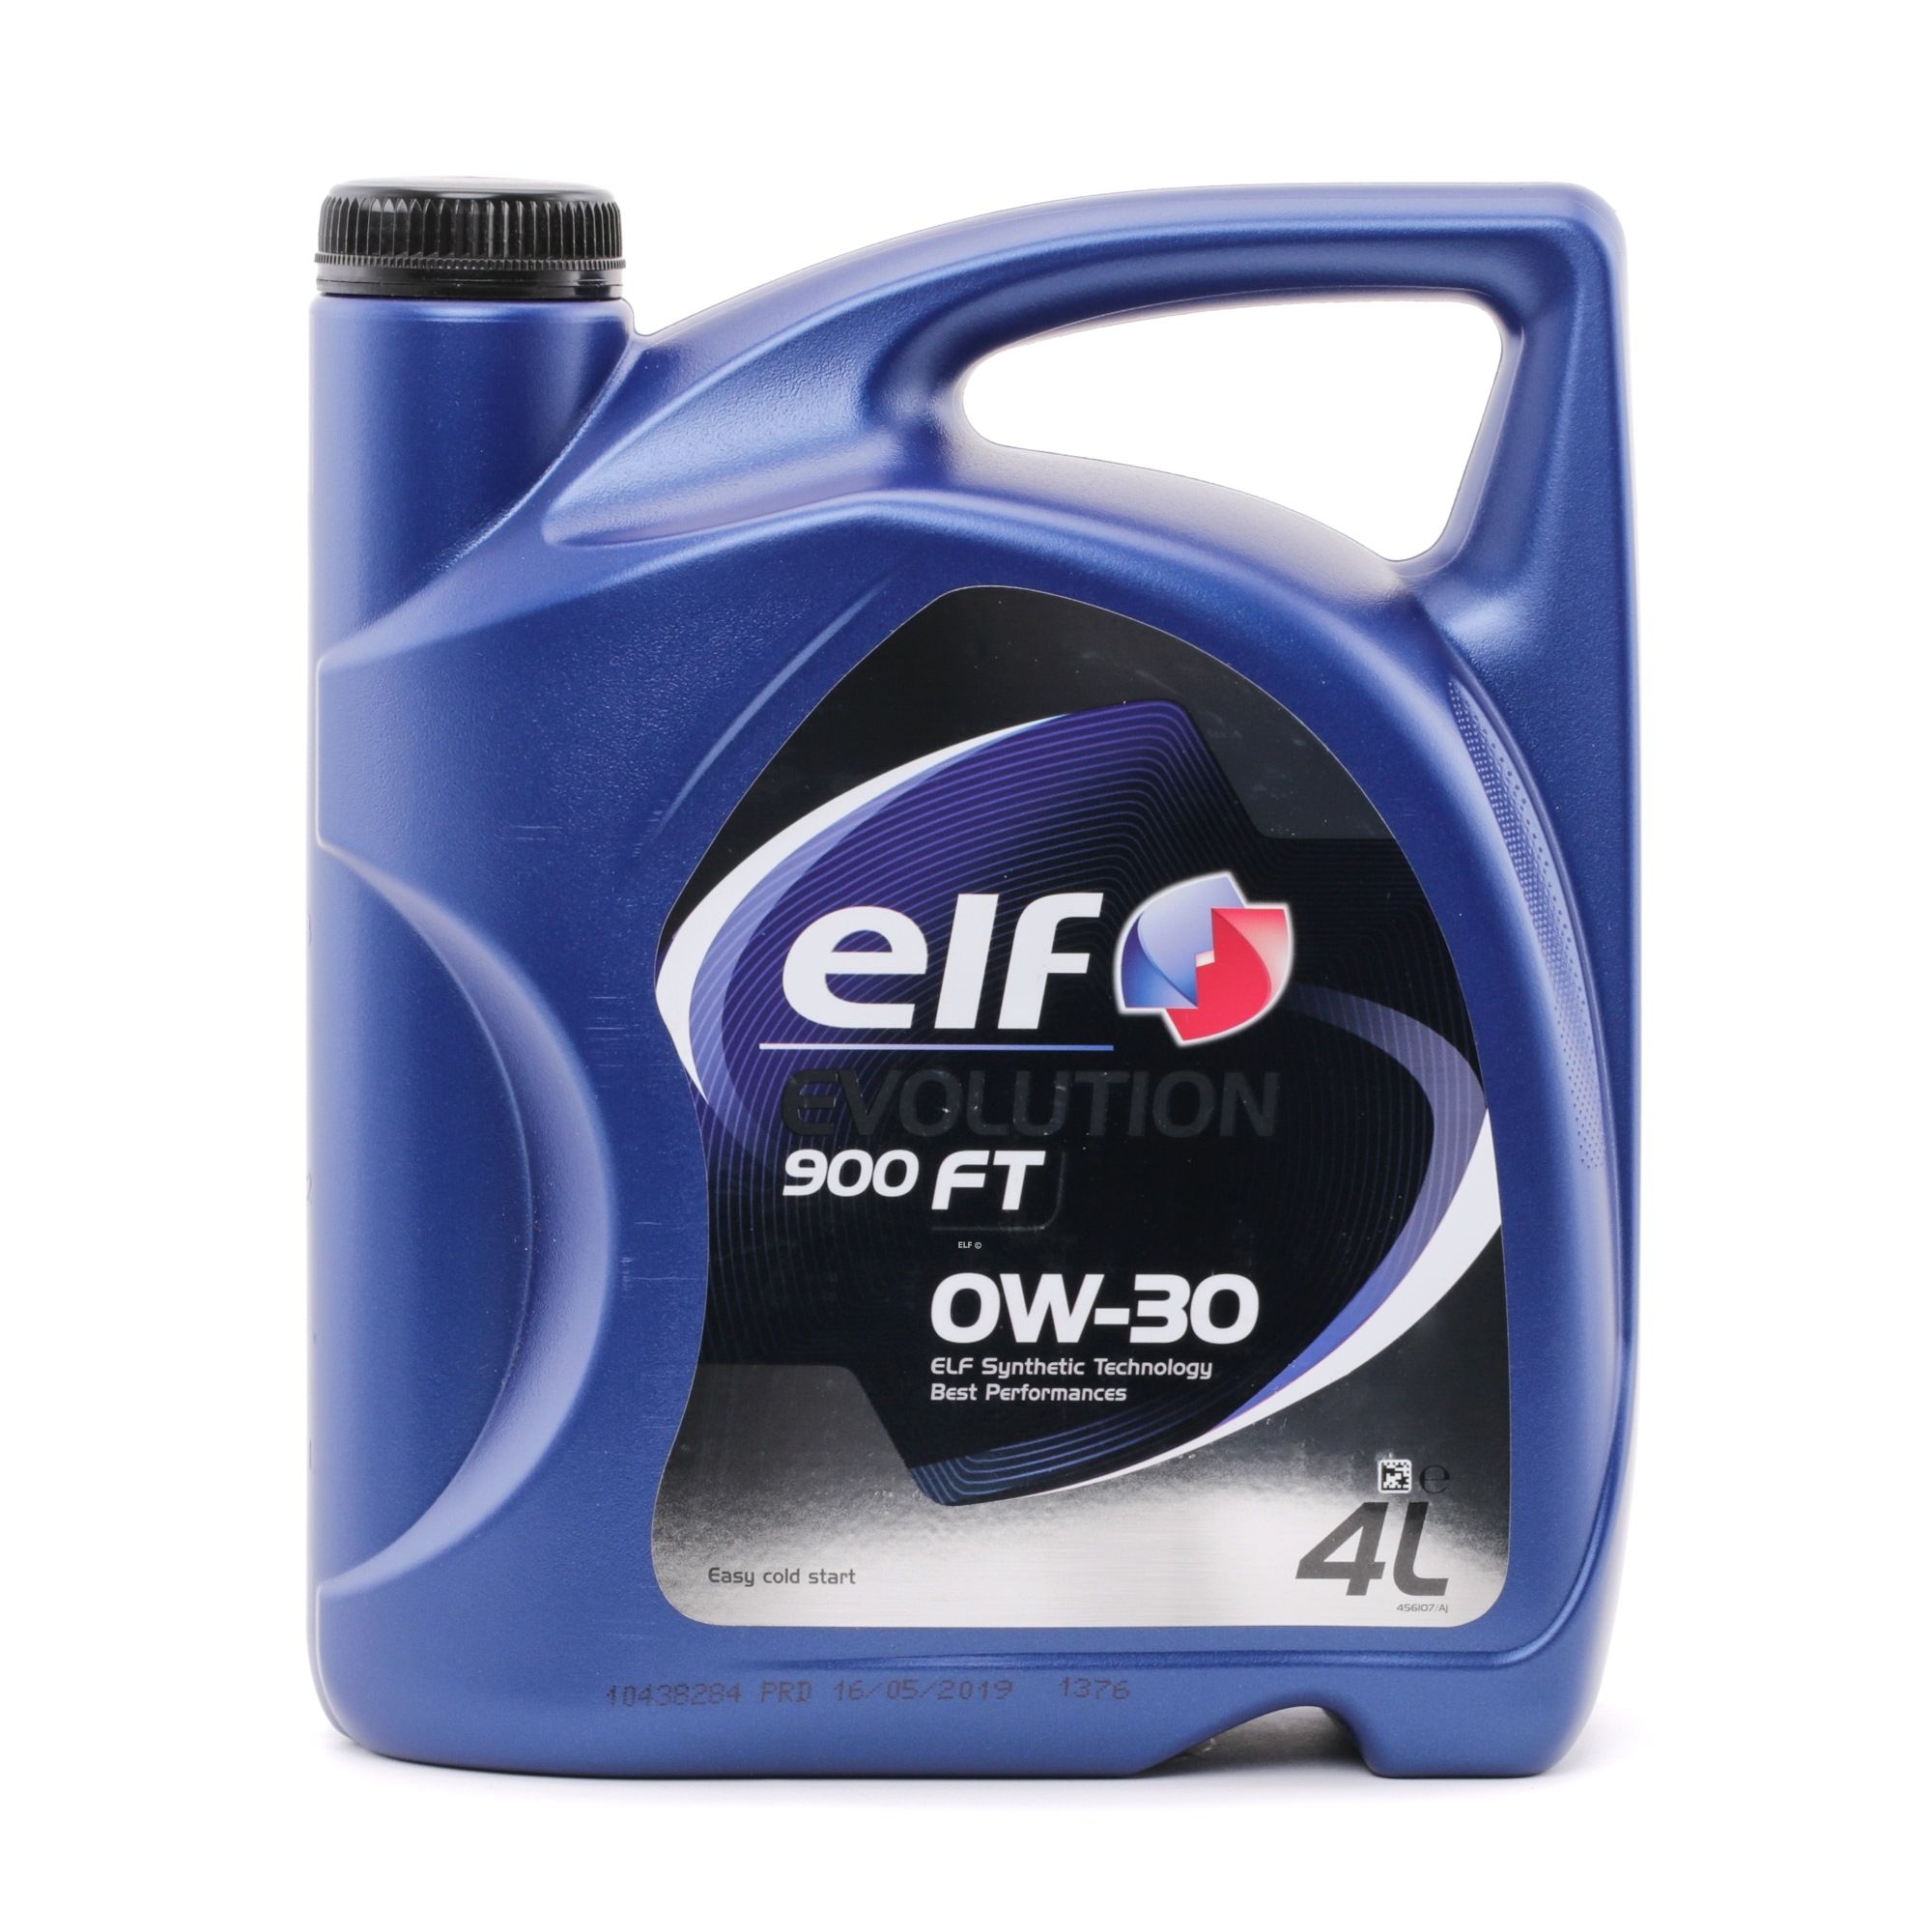 2195413 ELF Evolution, 900 FT 0W-30, 4l, Synthetiköl Motoröl 2195413 günstig kaufen